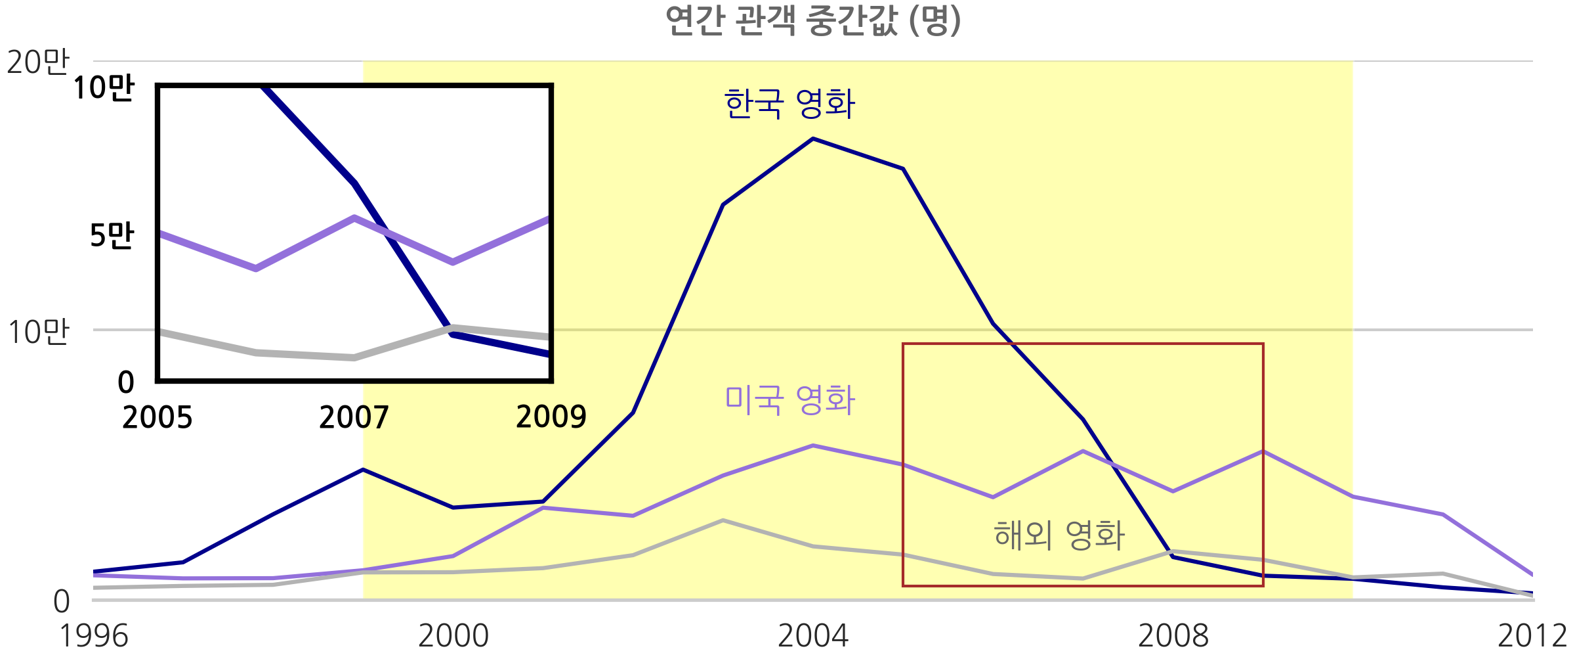 한국영화, 미국영화, 해외영화 연간 관객 중간값 이미지, 하단 상세 내용 참조